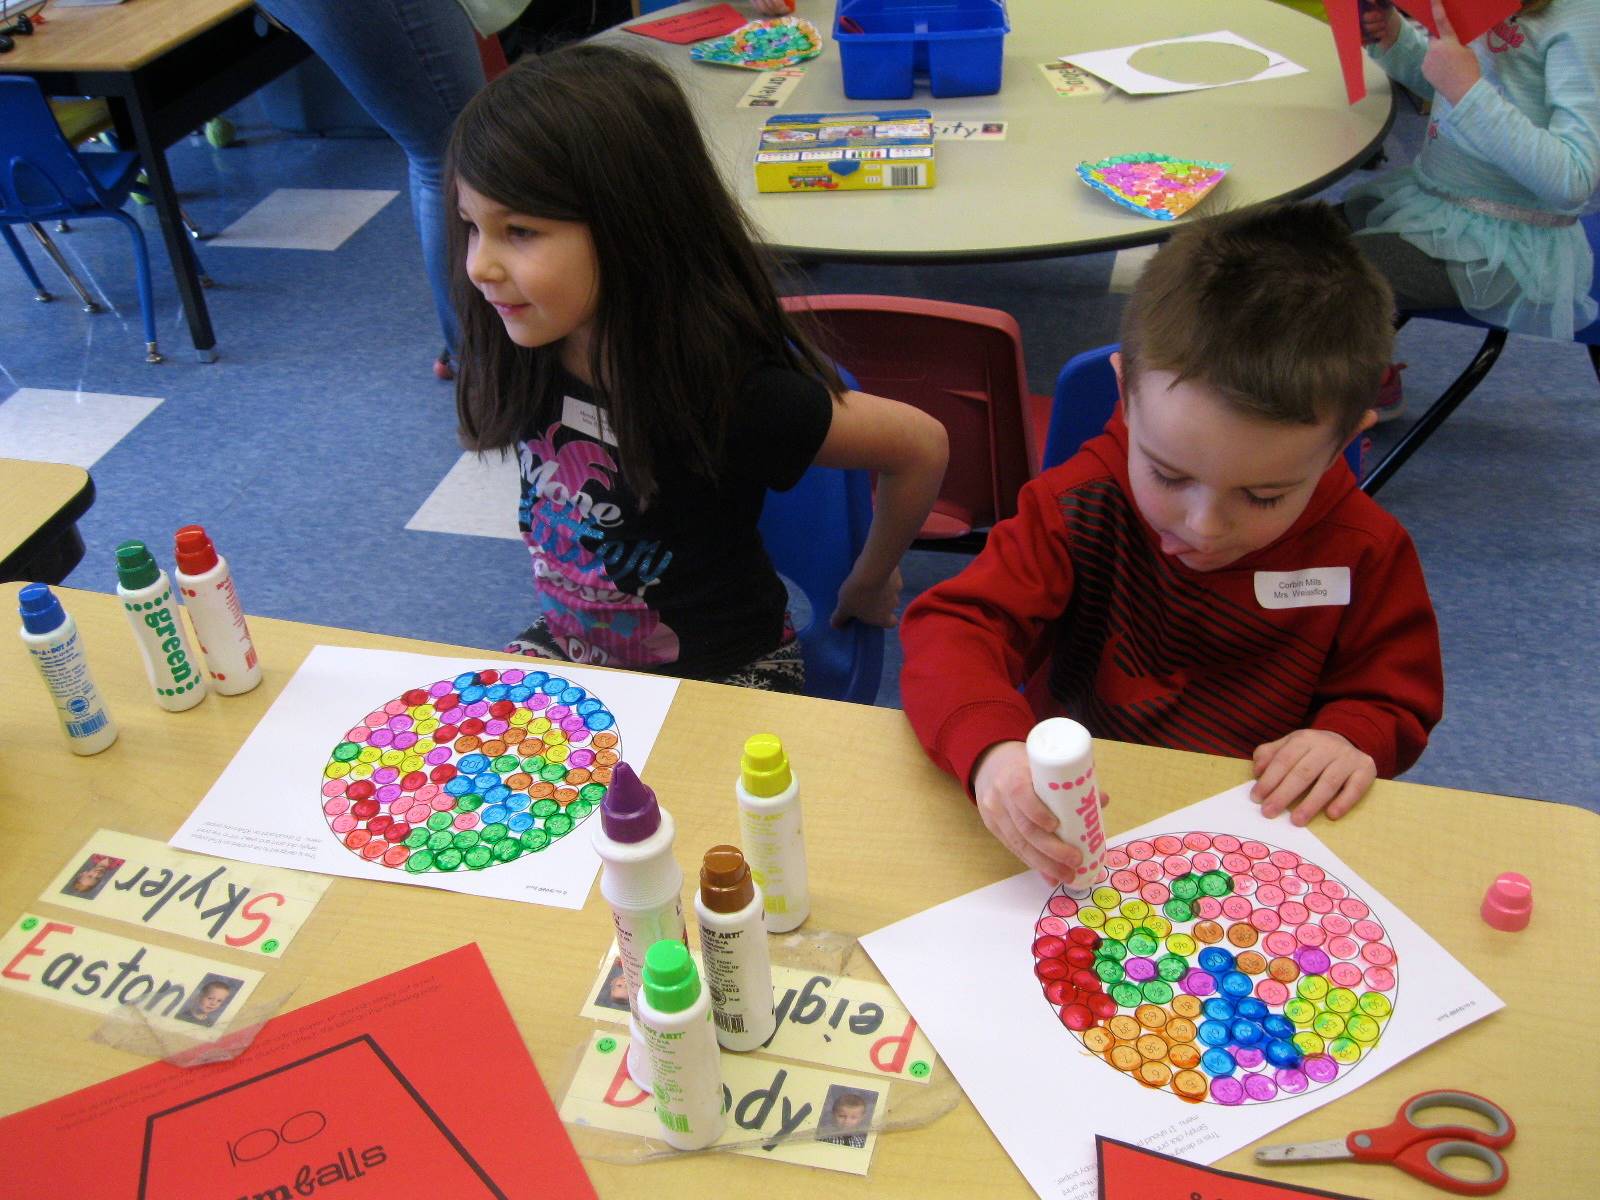 2 students paint 100 gum balls.